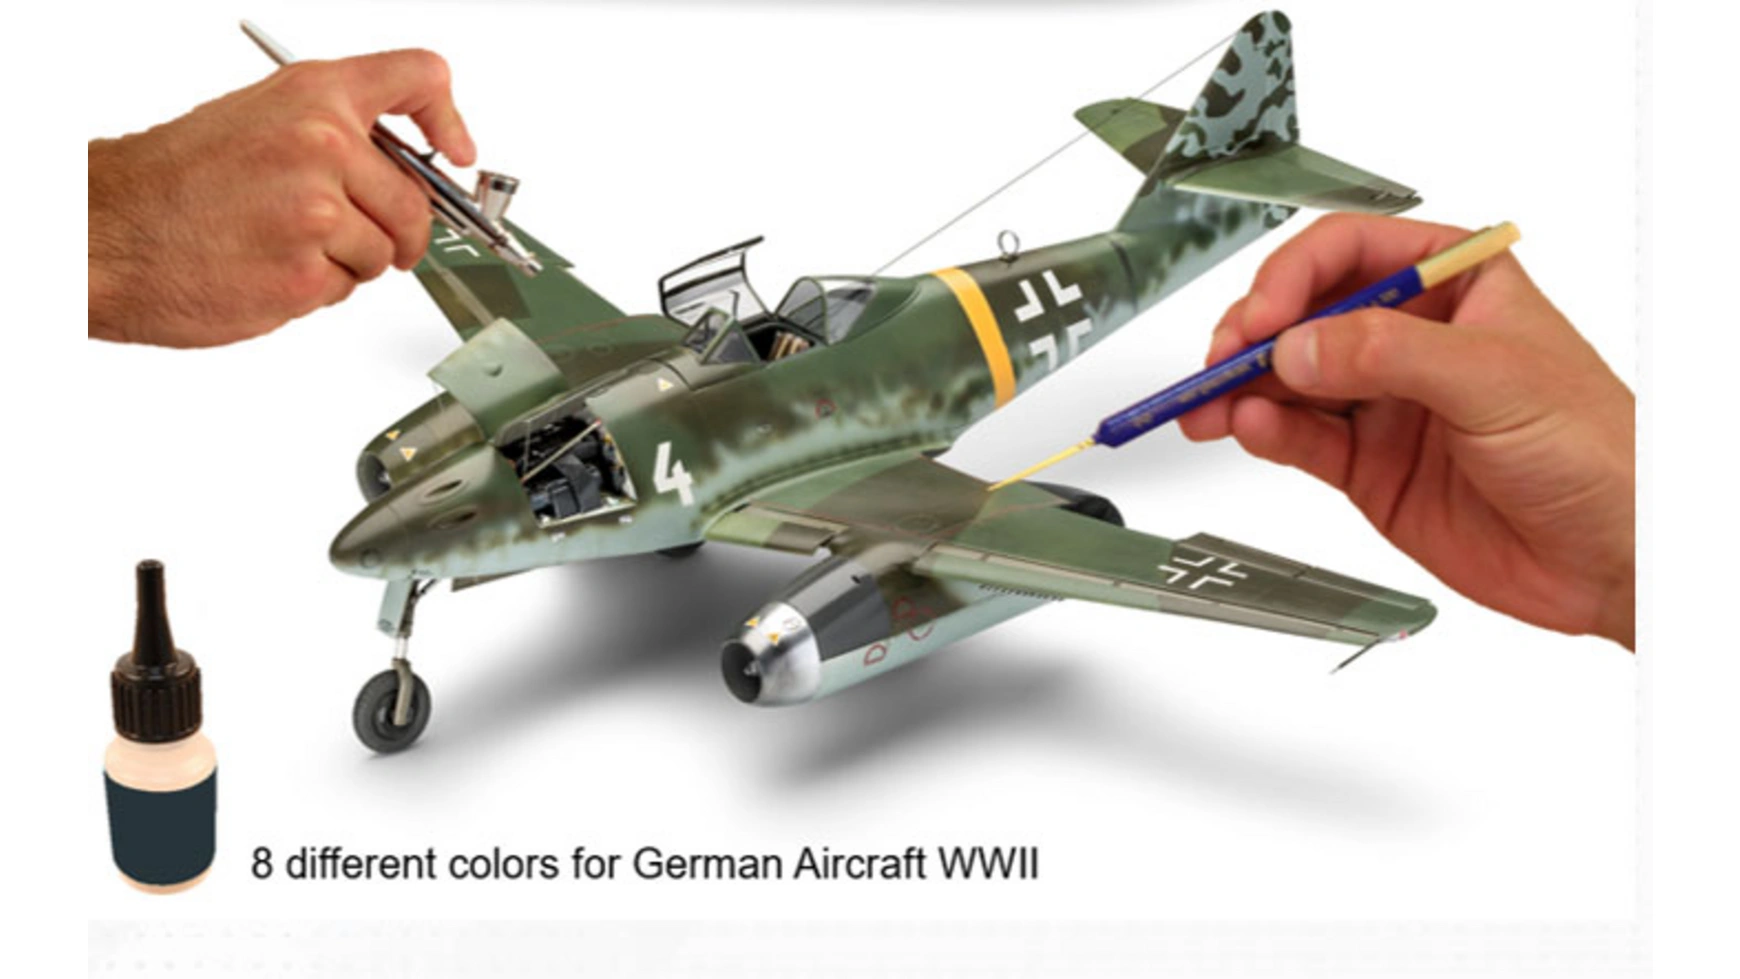 самолеты ссср второй мировой войны Цвет модели Revell немецкий самолет времен Второй мировой войны